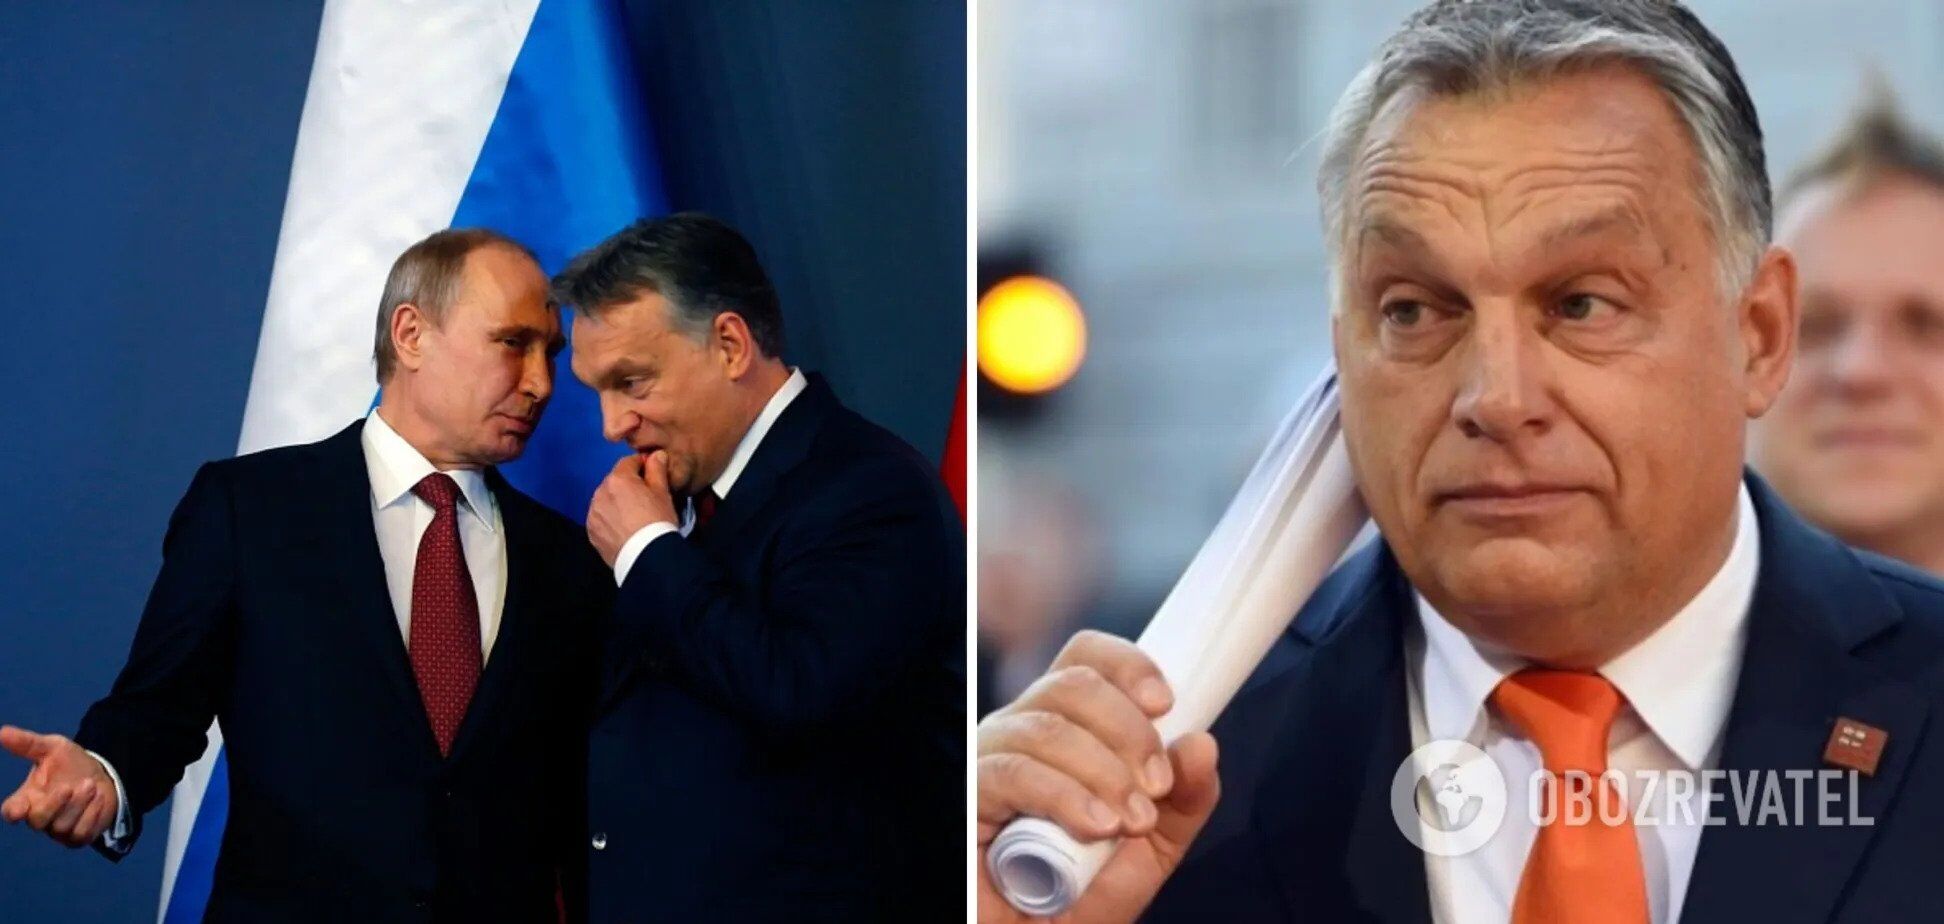 Орбан назвал Украину "несуществующим в финансовом плане" государством и повторил тезисы Кремля